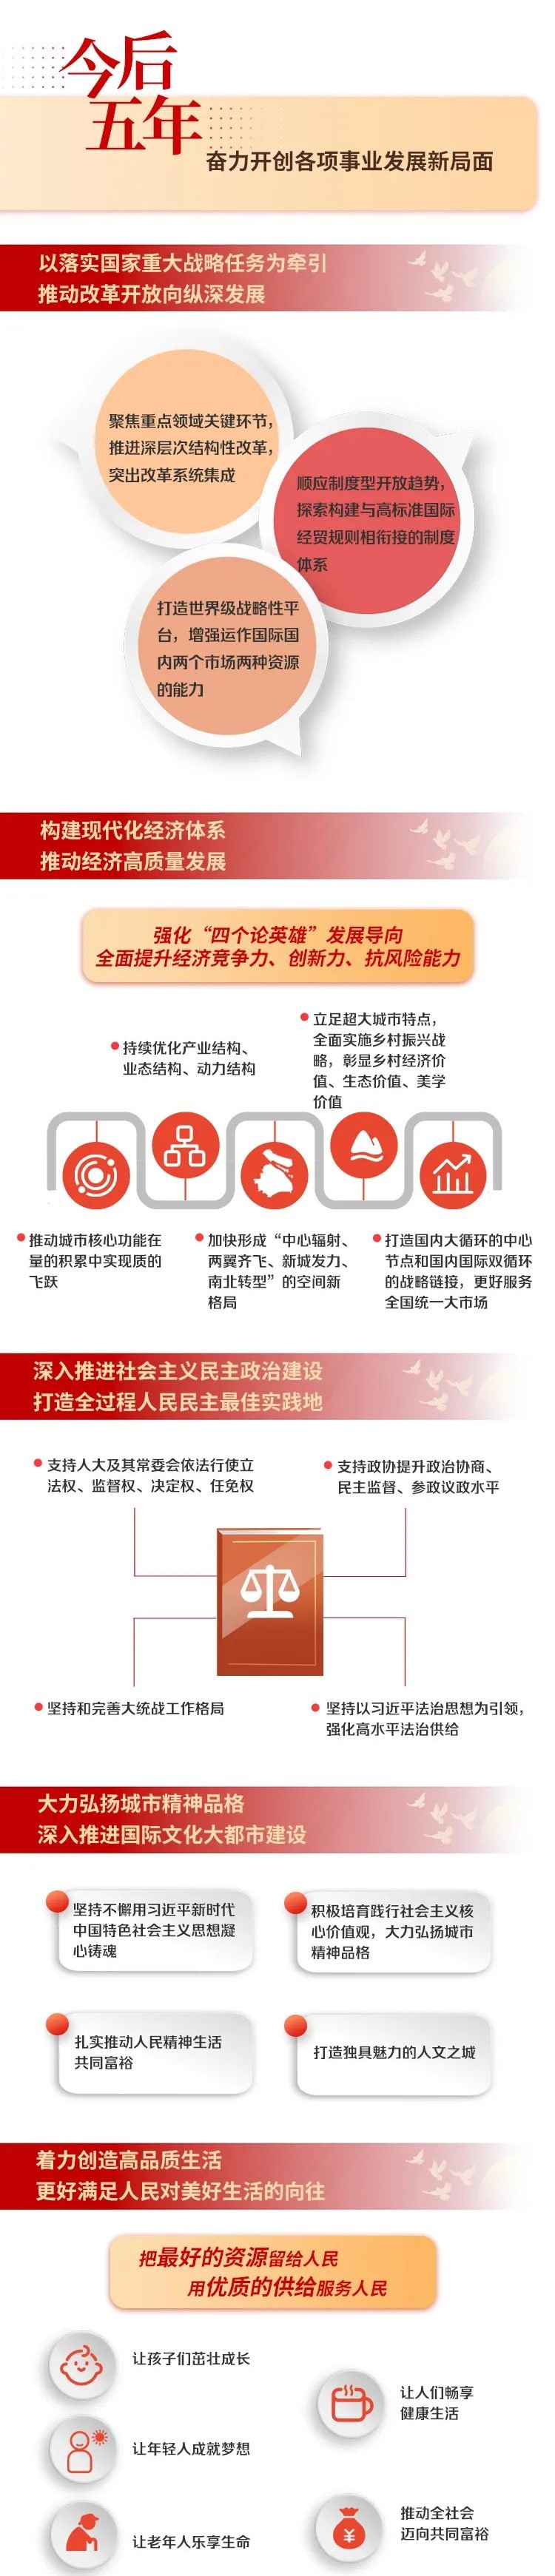 上海遴选：上海市第十二次党代会报告图解3.jpg